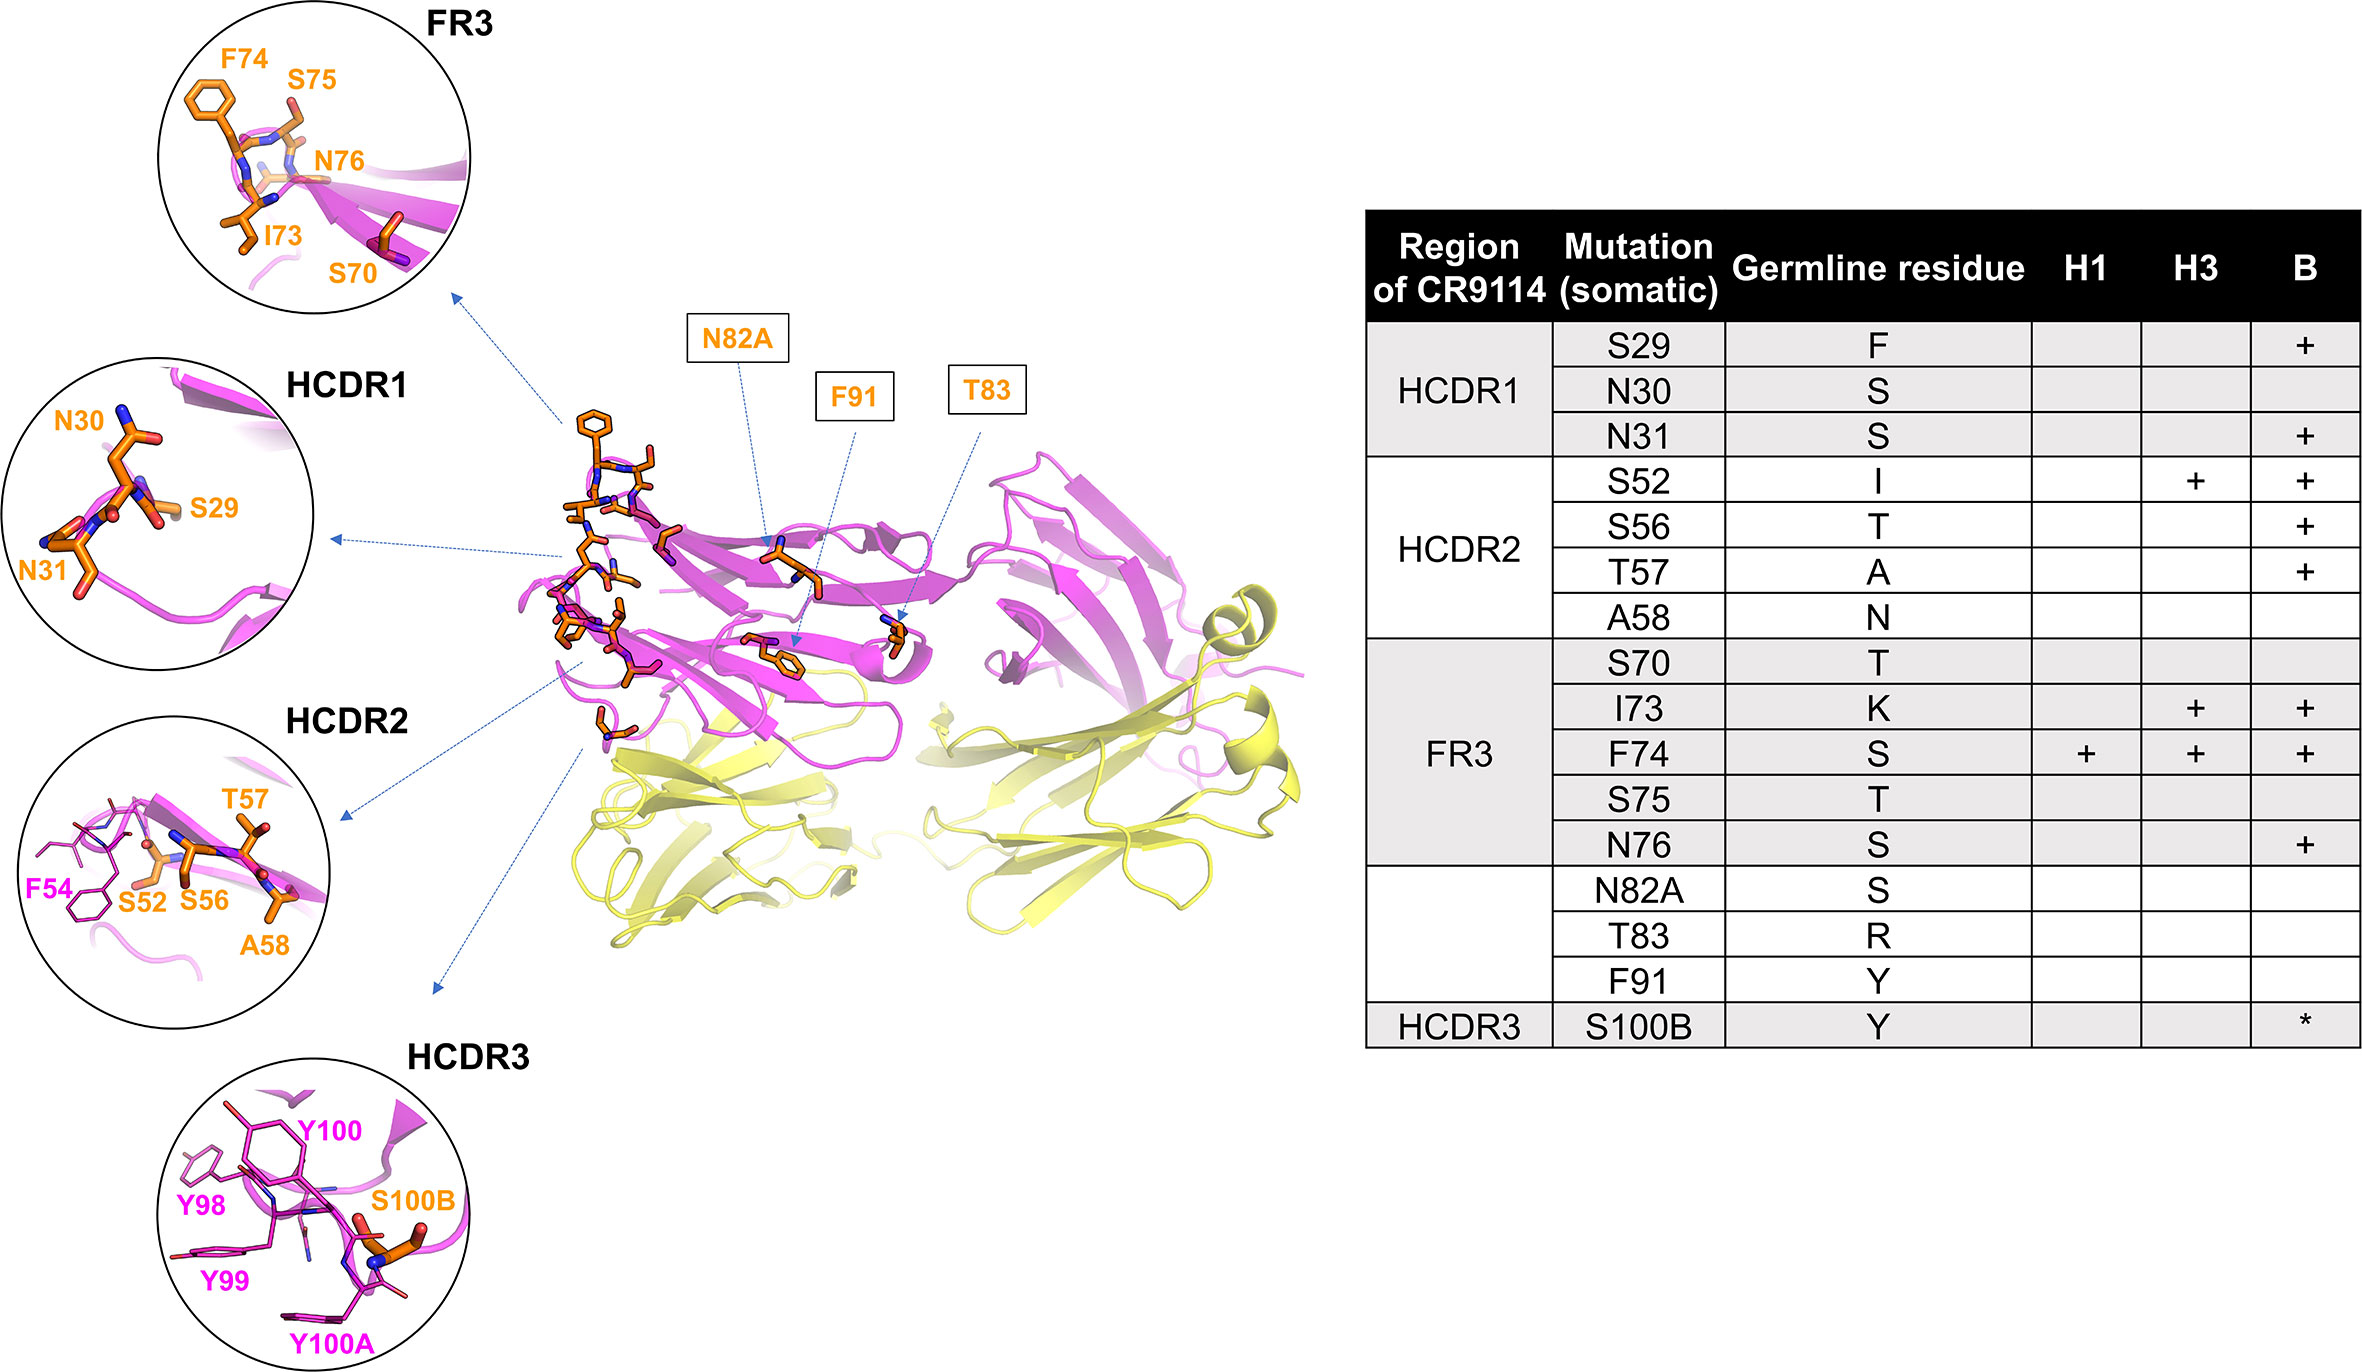 CR9114 key amino acid